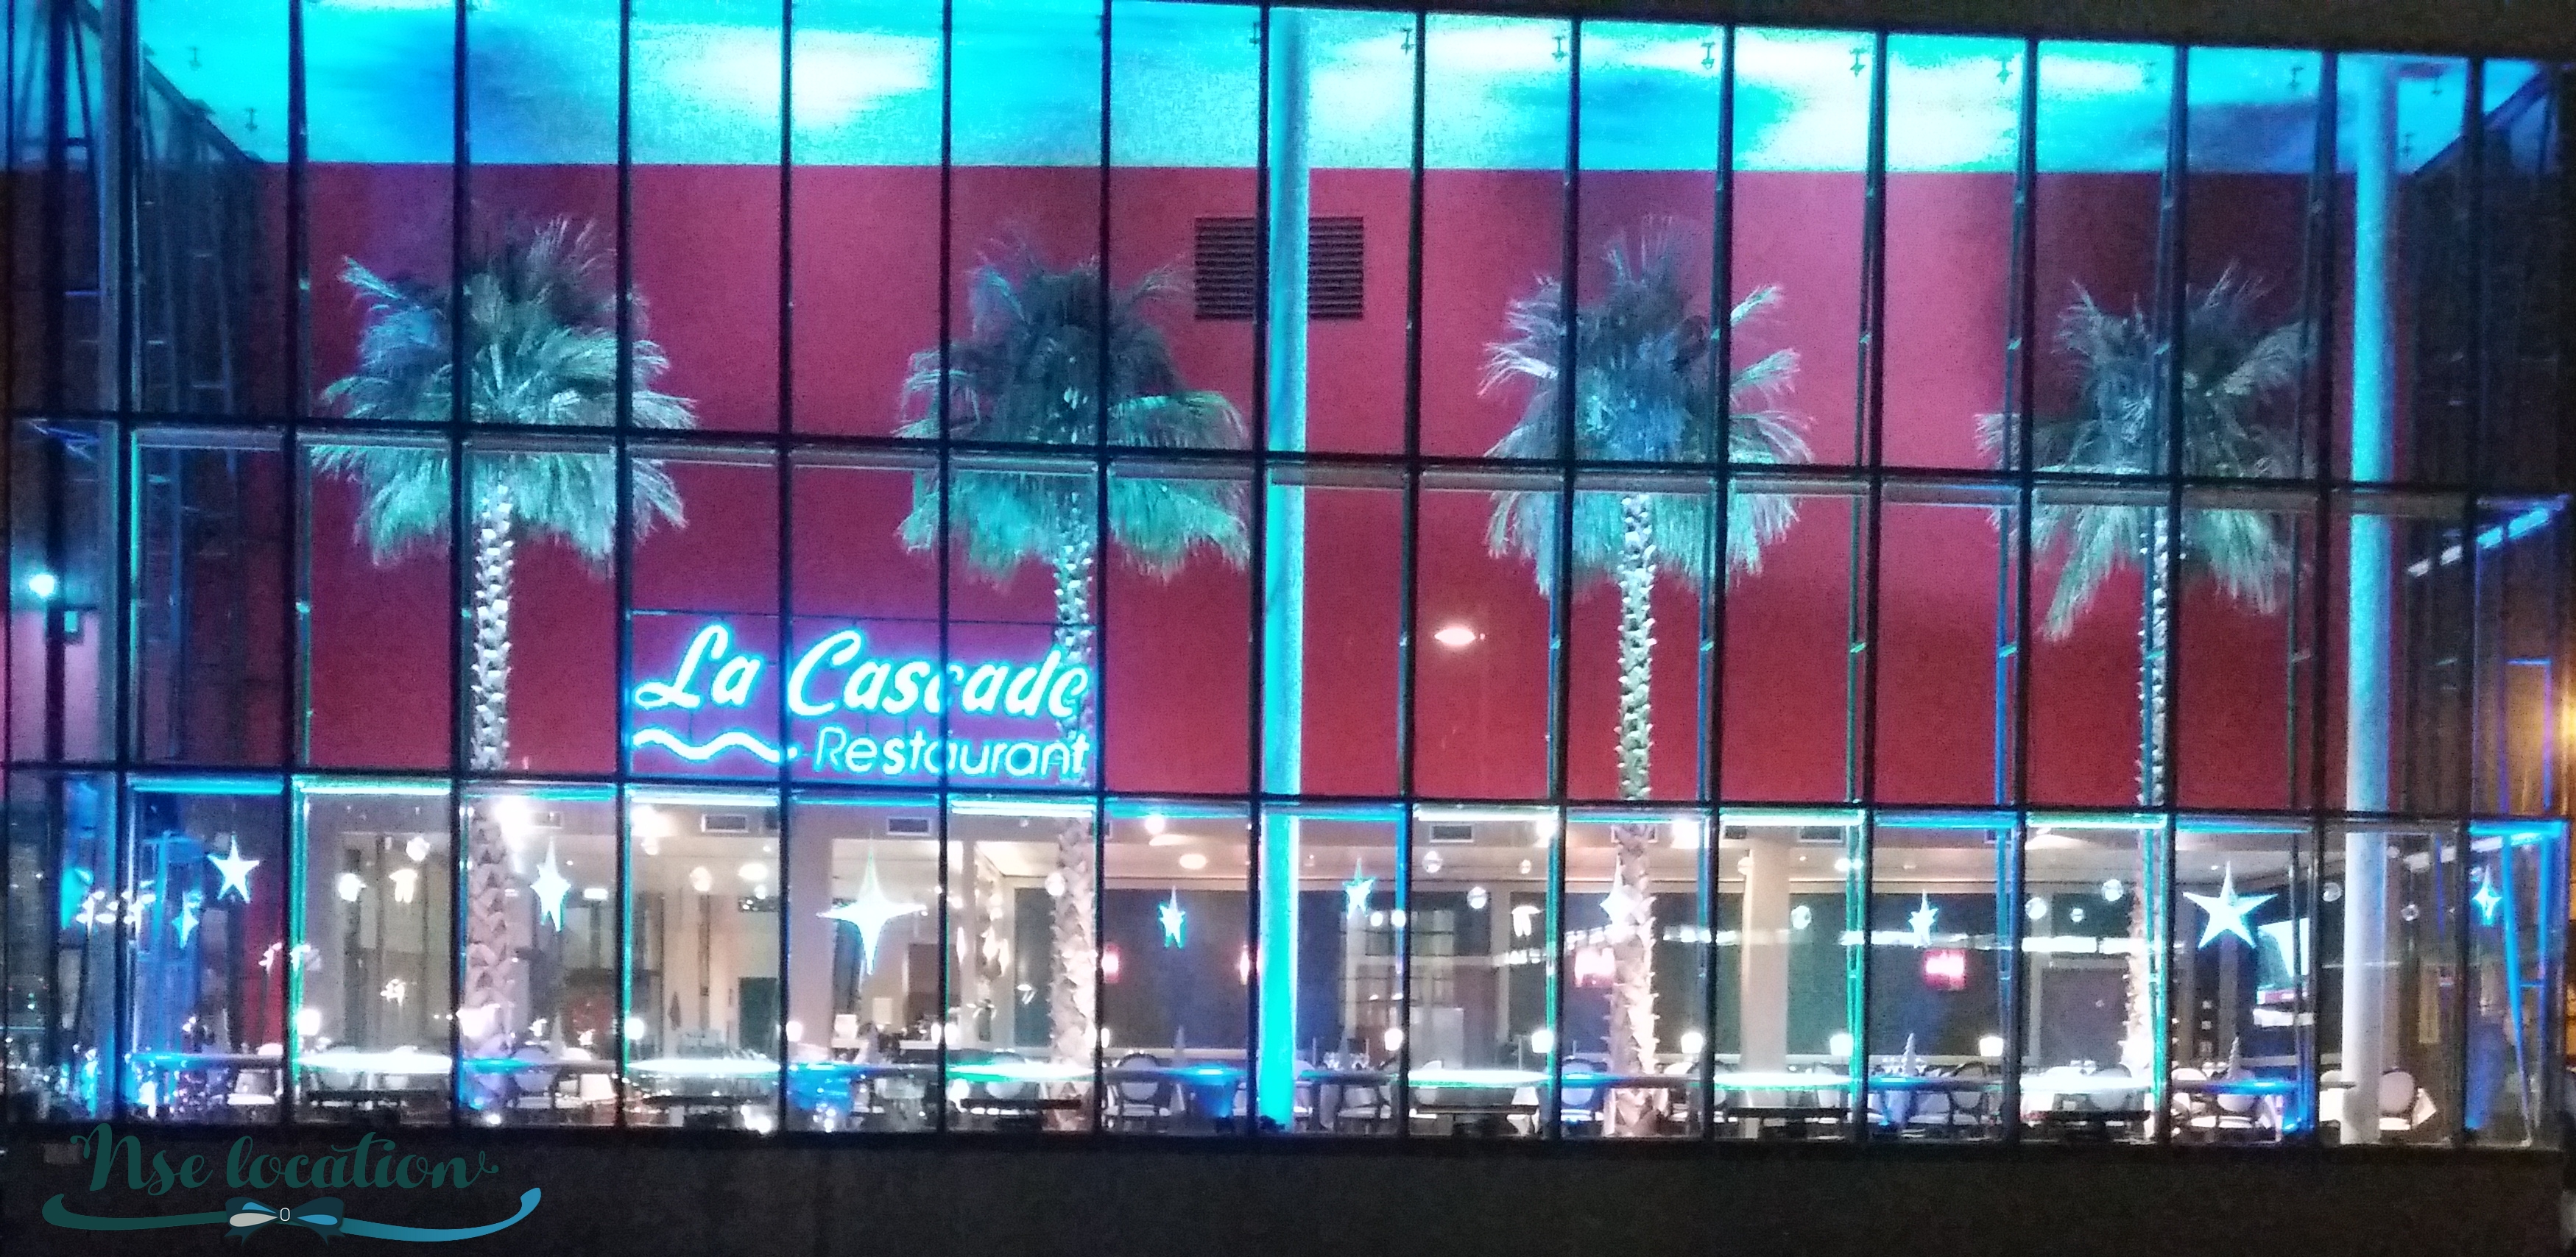 Déco et éclairage du Casino de Dunkerque - NSE Location